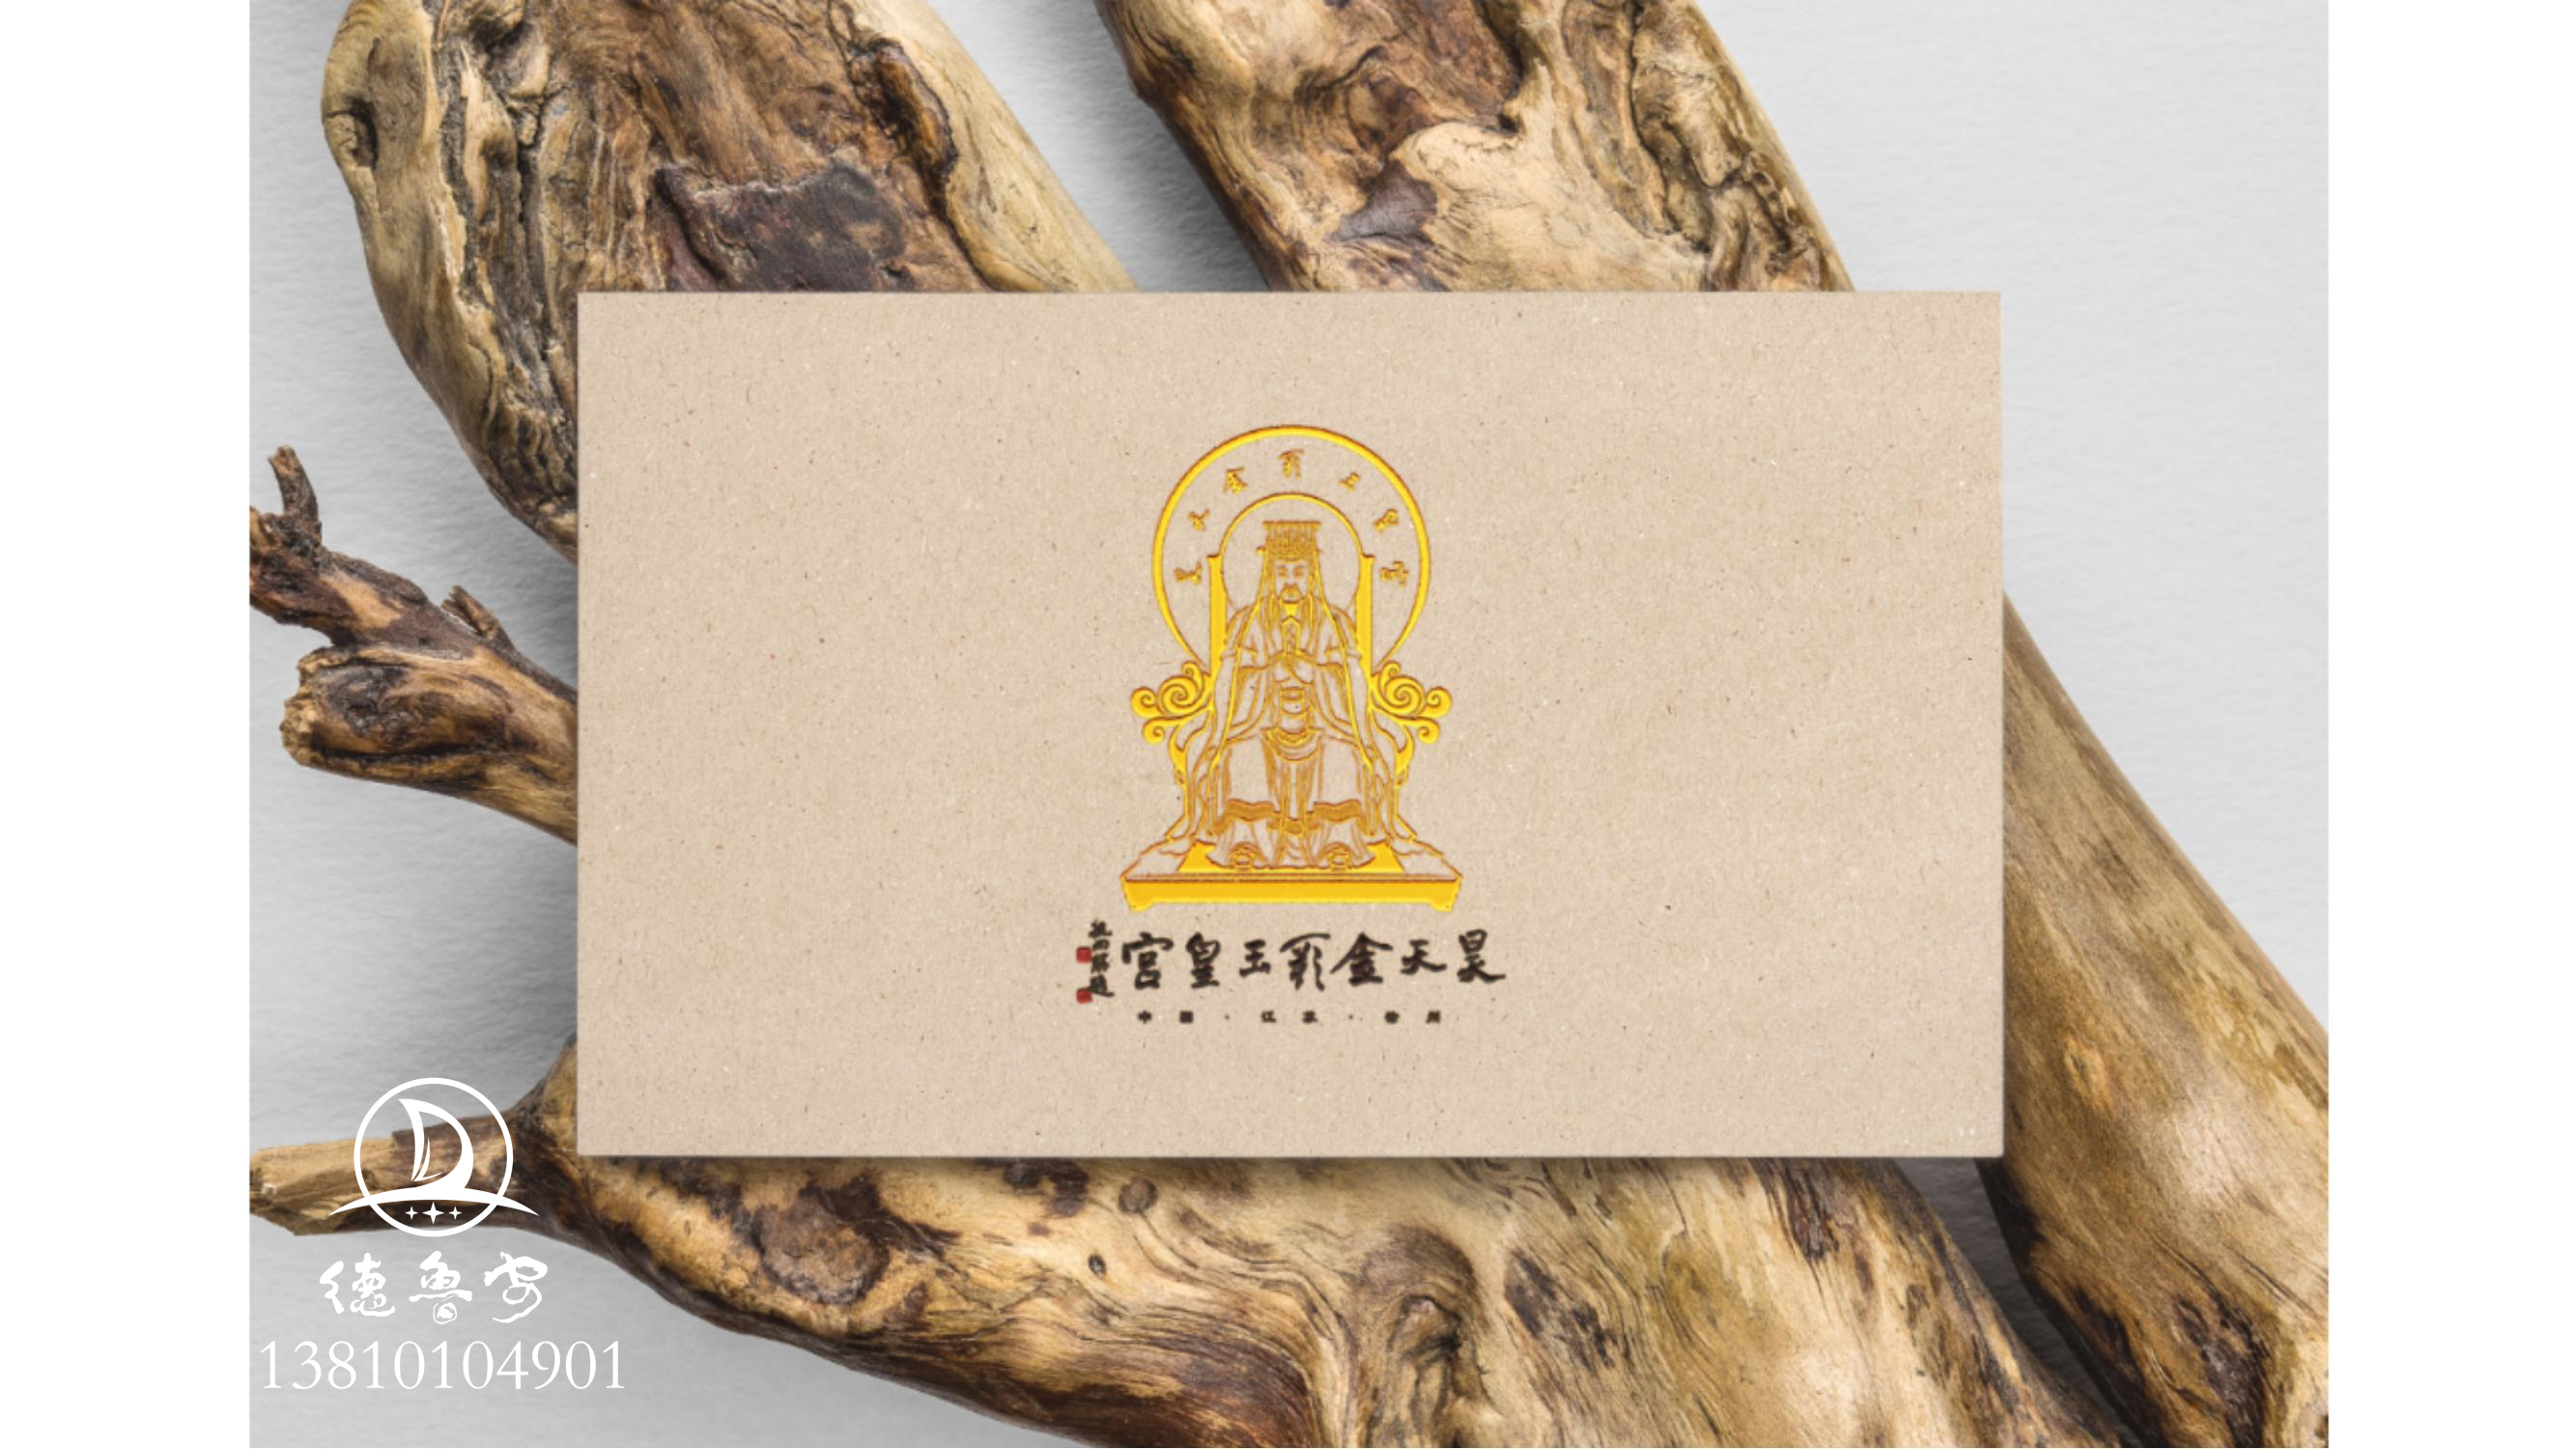 玉皇宫 logo定稿方案_17.jpg